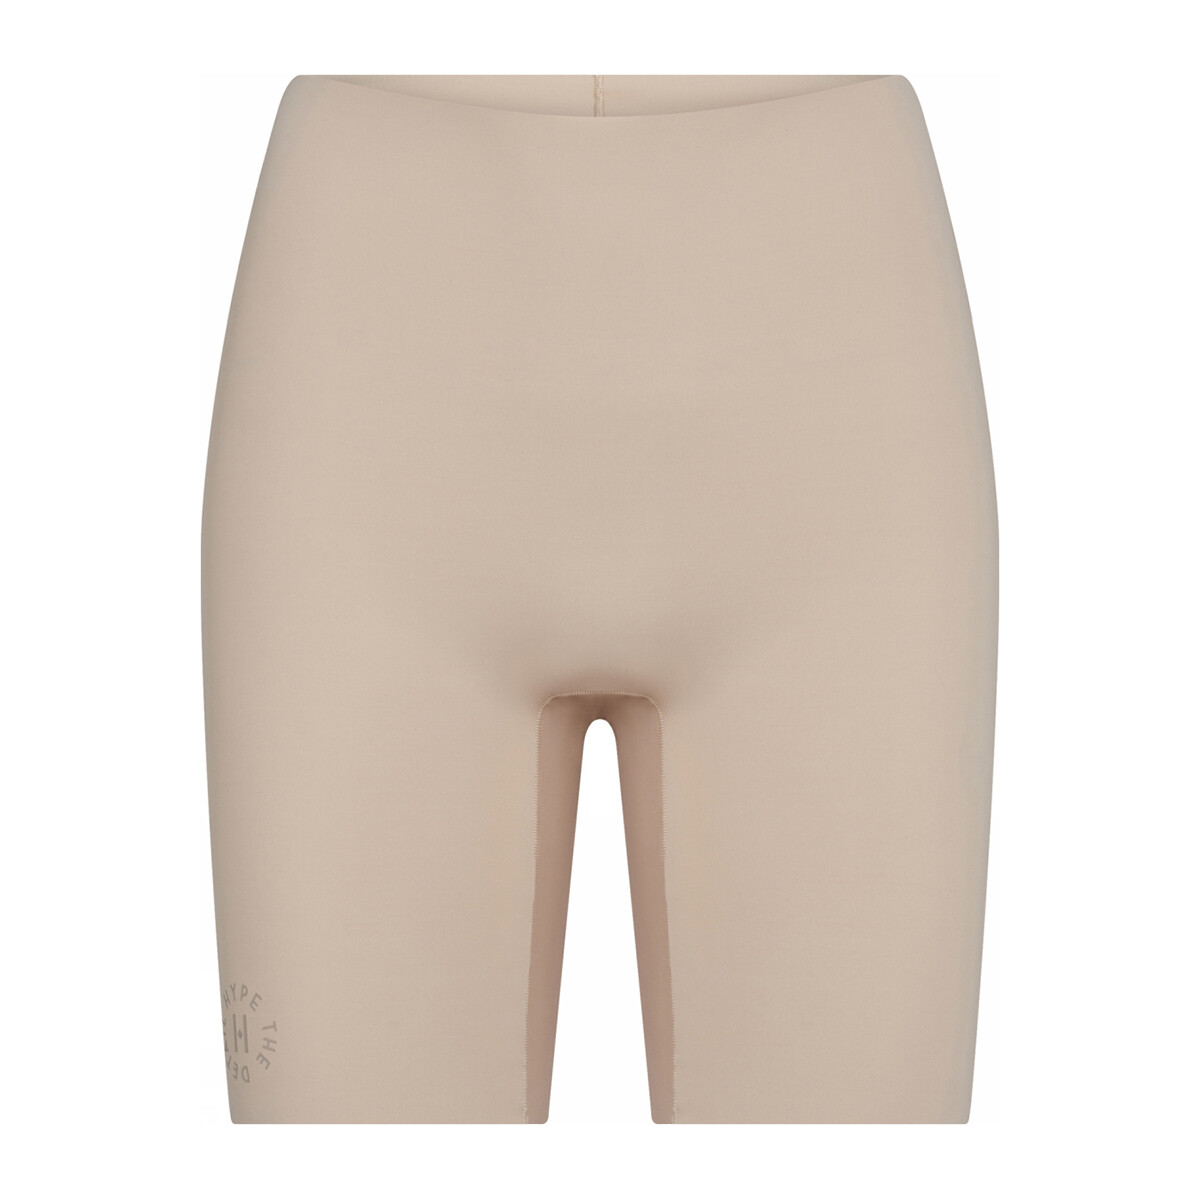 Se Hype The Detail Essentials Shorts, Farve: Beige, Størrelse: L, Dame hos Netlingeri.dk